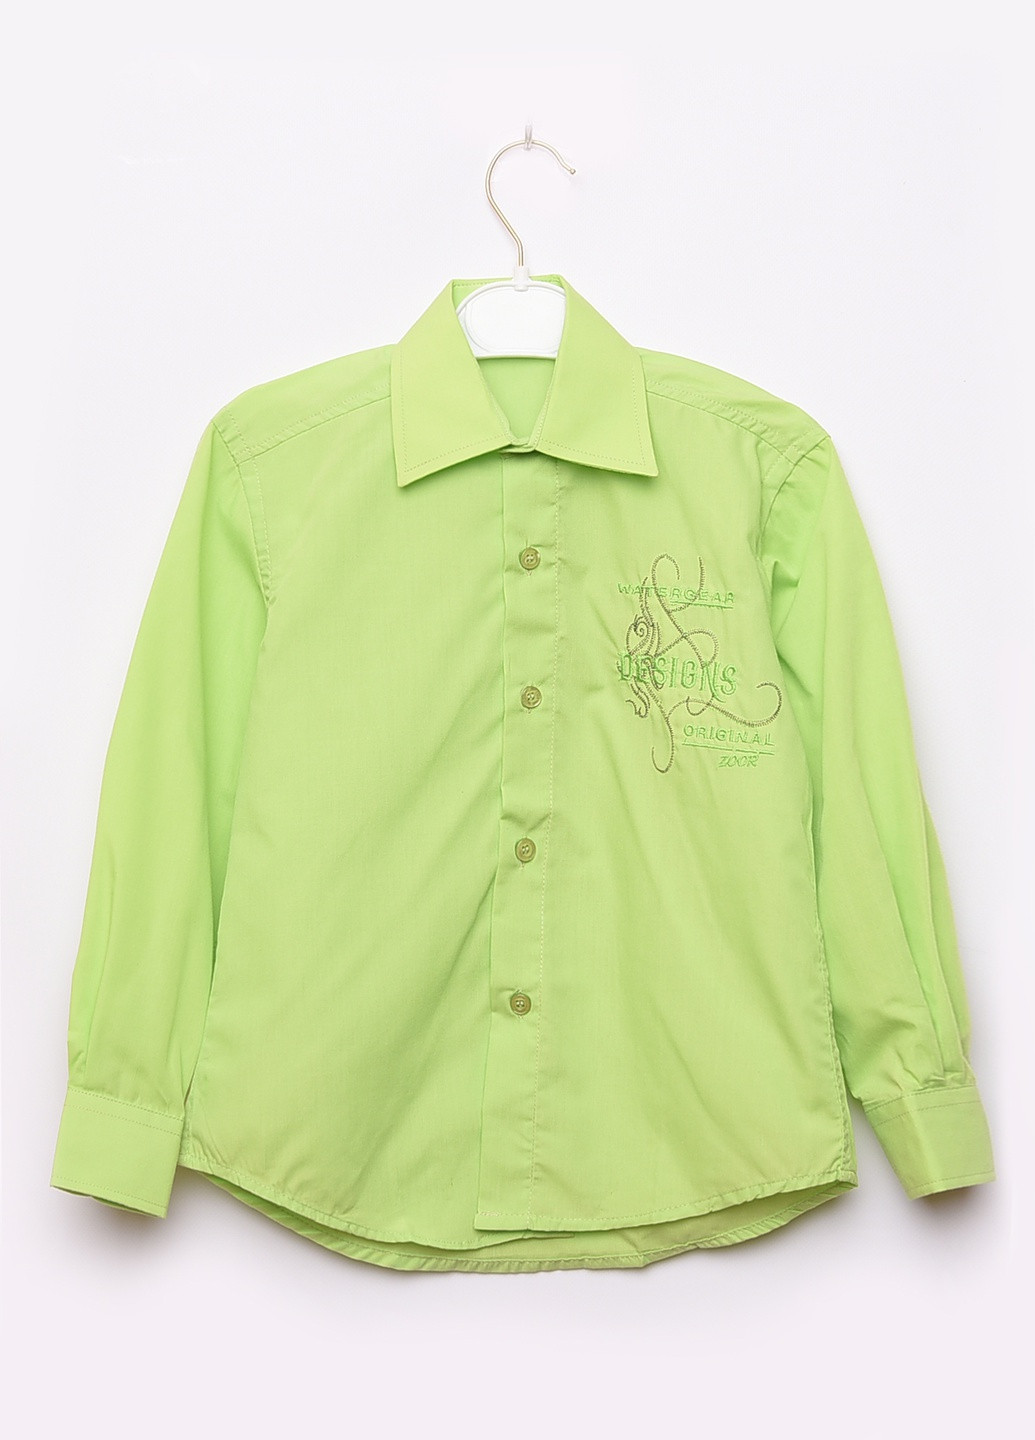 Салатовая классическая рубашка с надписями Let's Shop